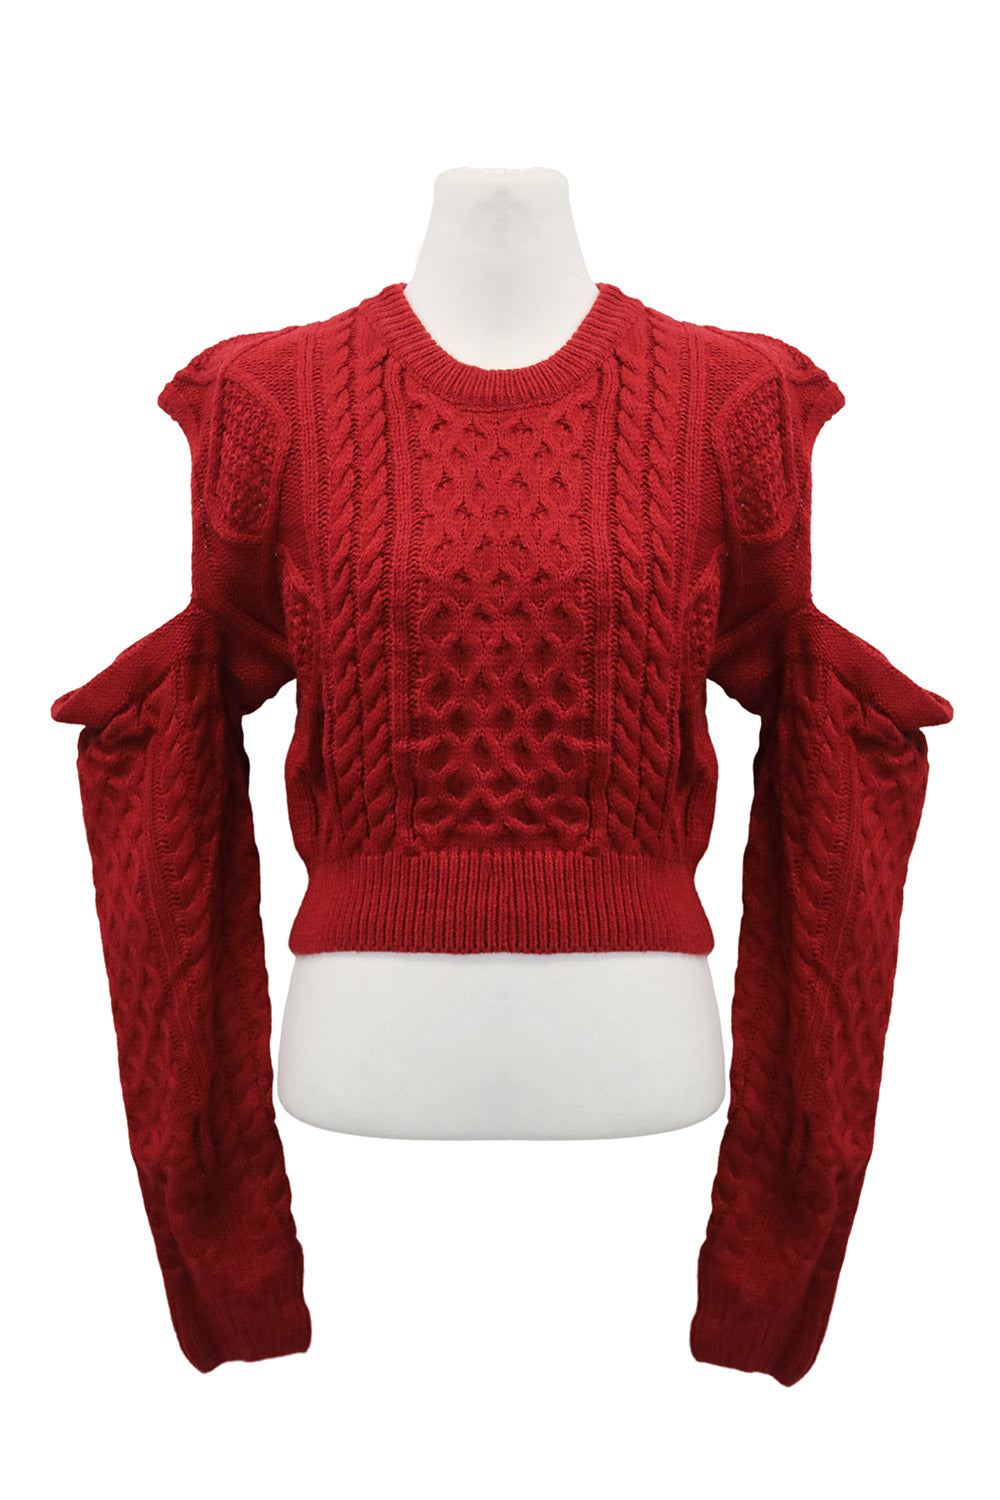 storets.com Cali Cold Shoulder Knit Sweater